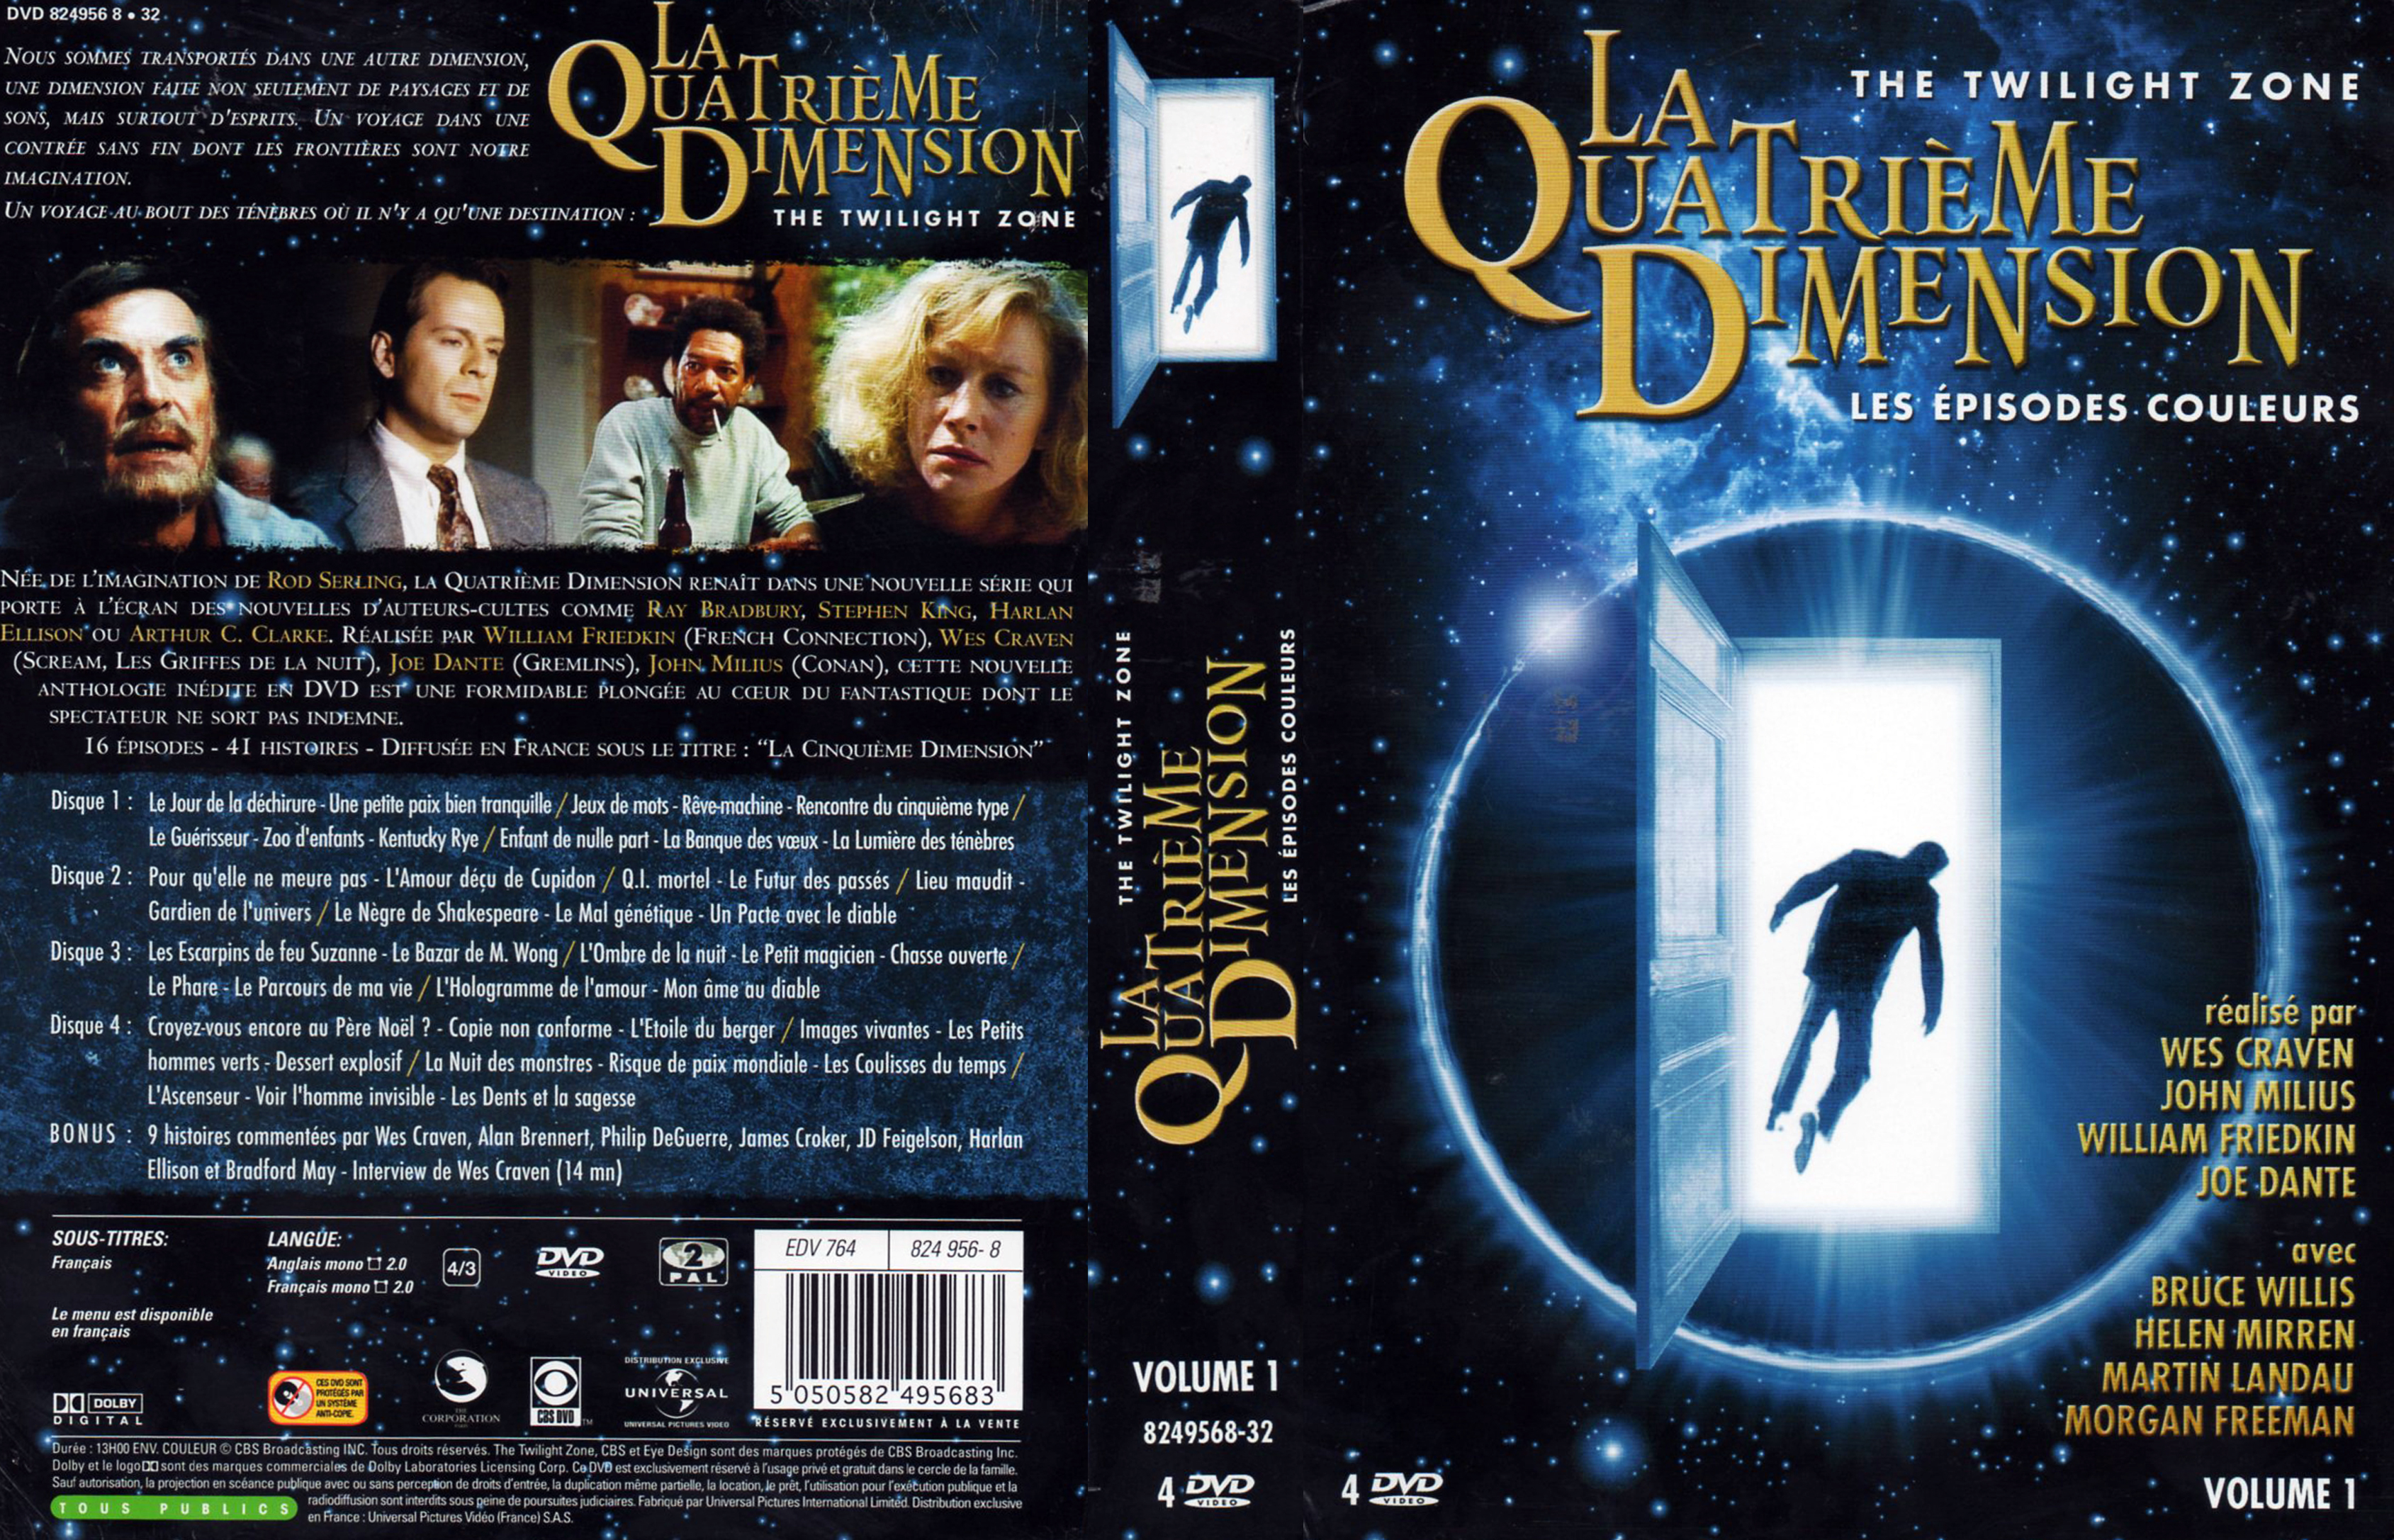 Jaquette DVD La quatrime dimension - Episodes couleurs vol 1